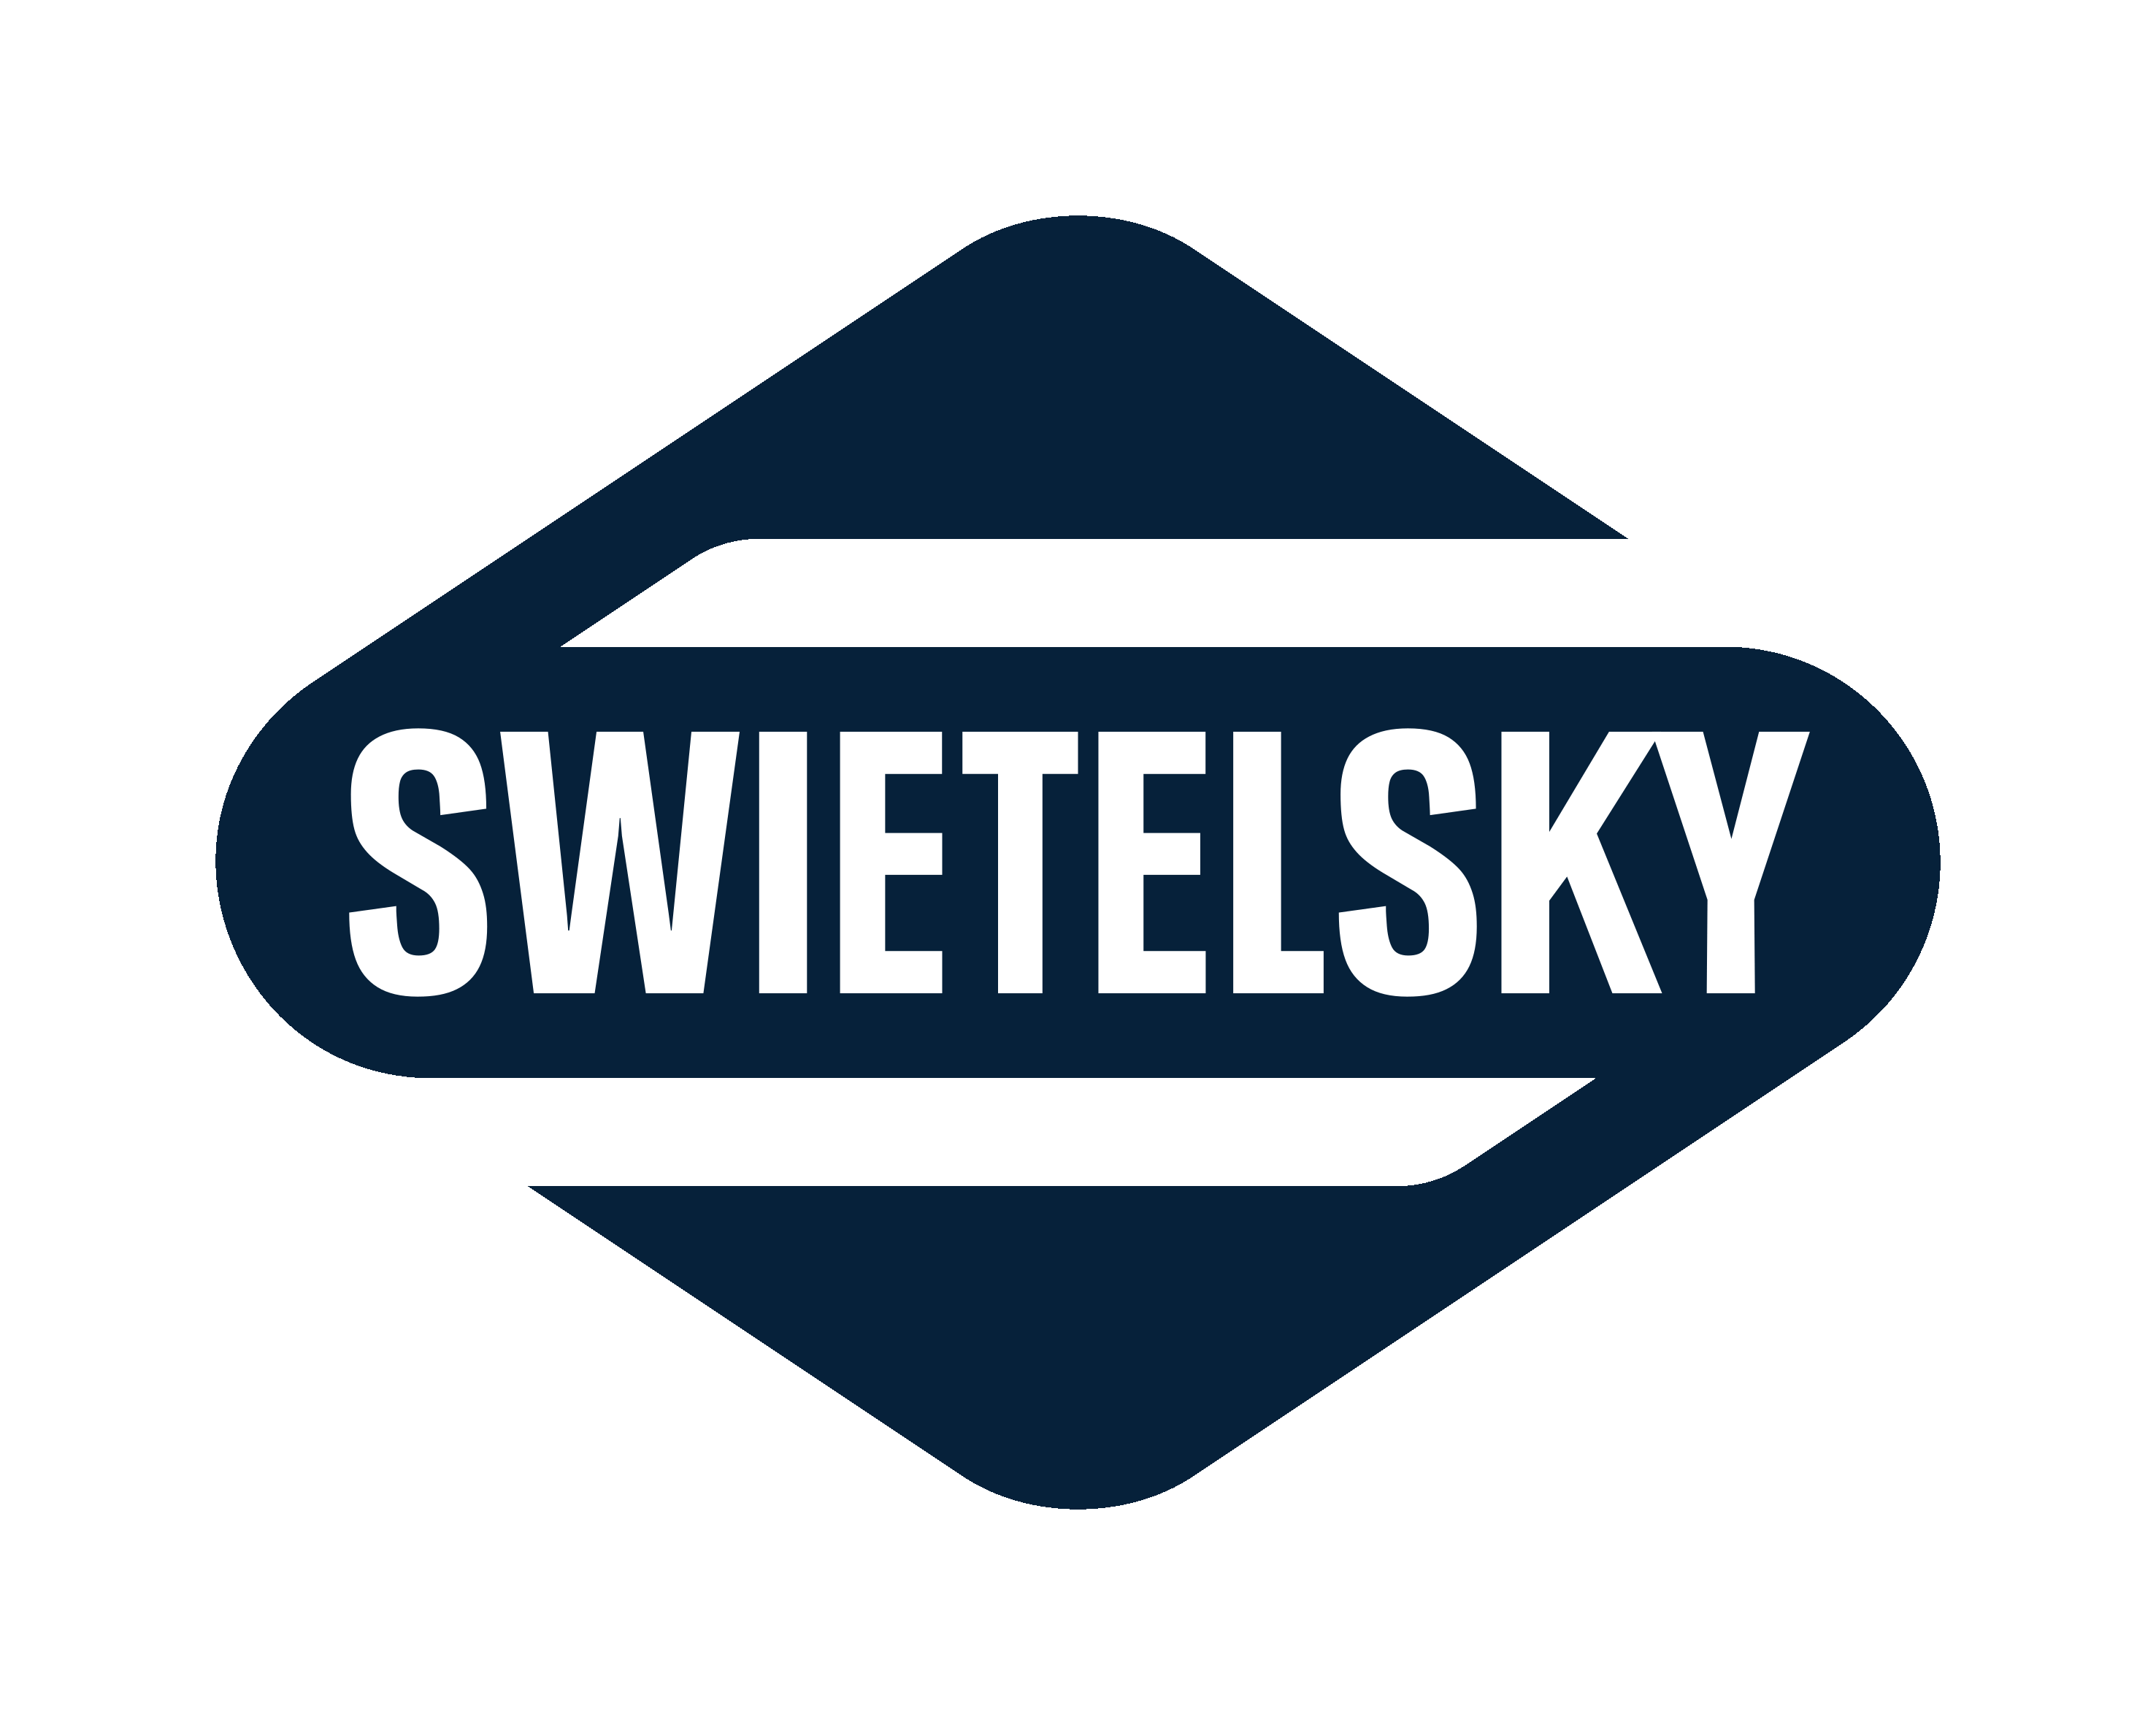 swietelsky